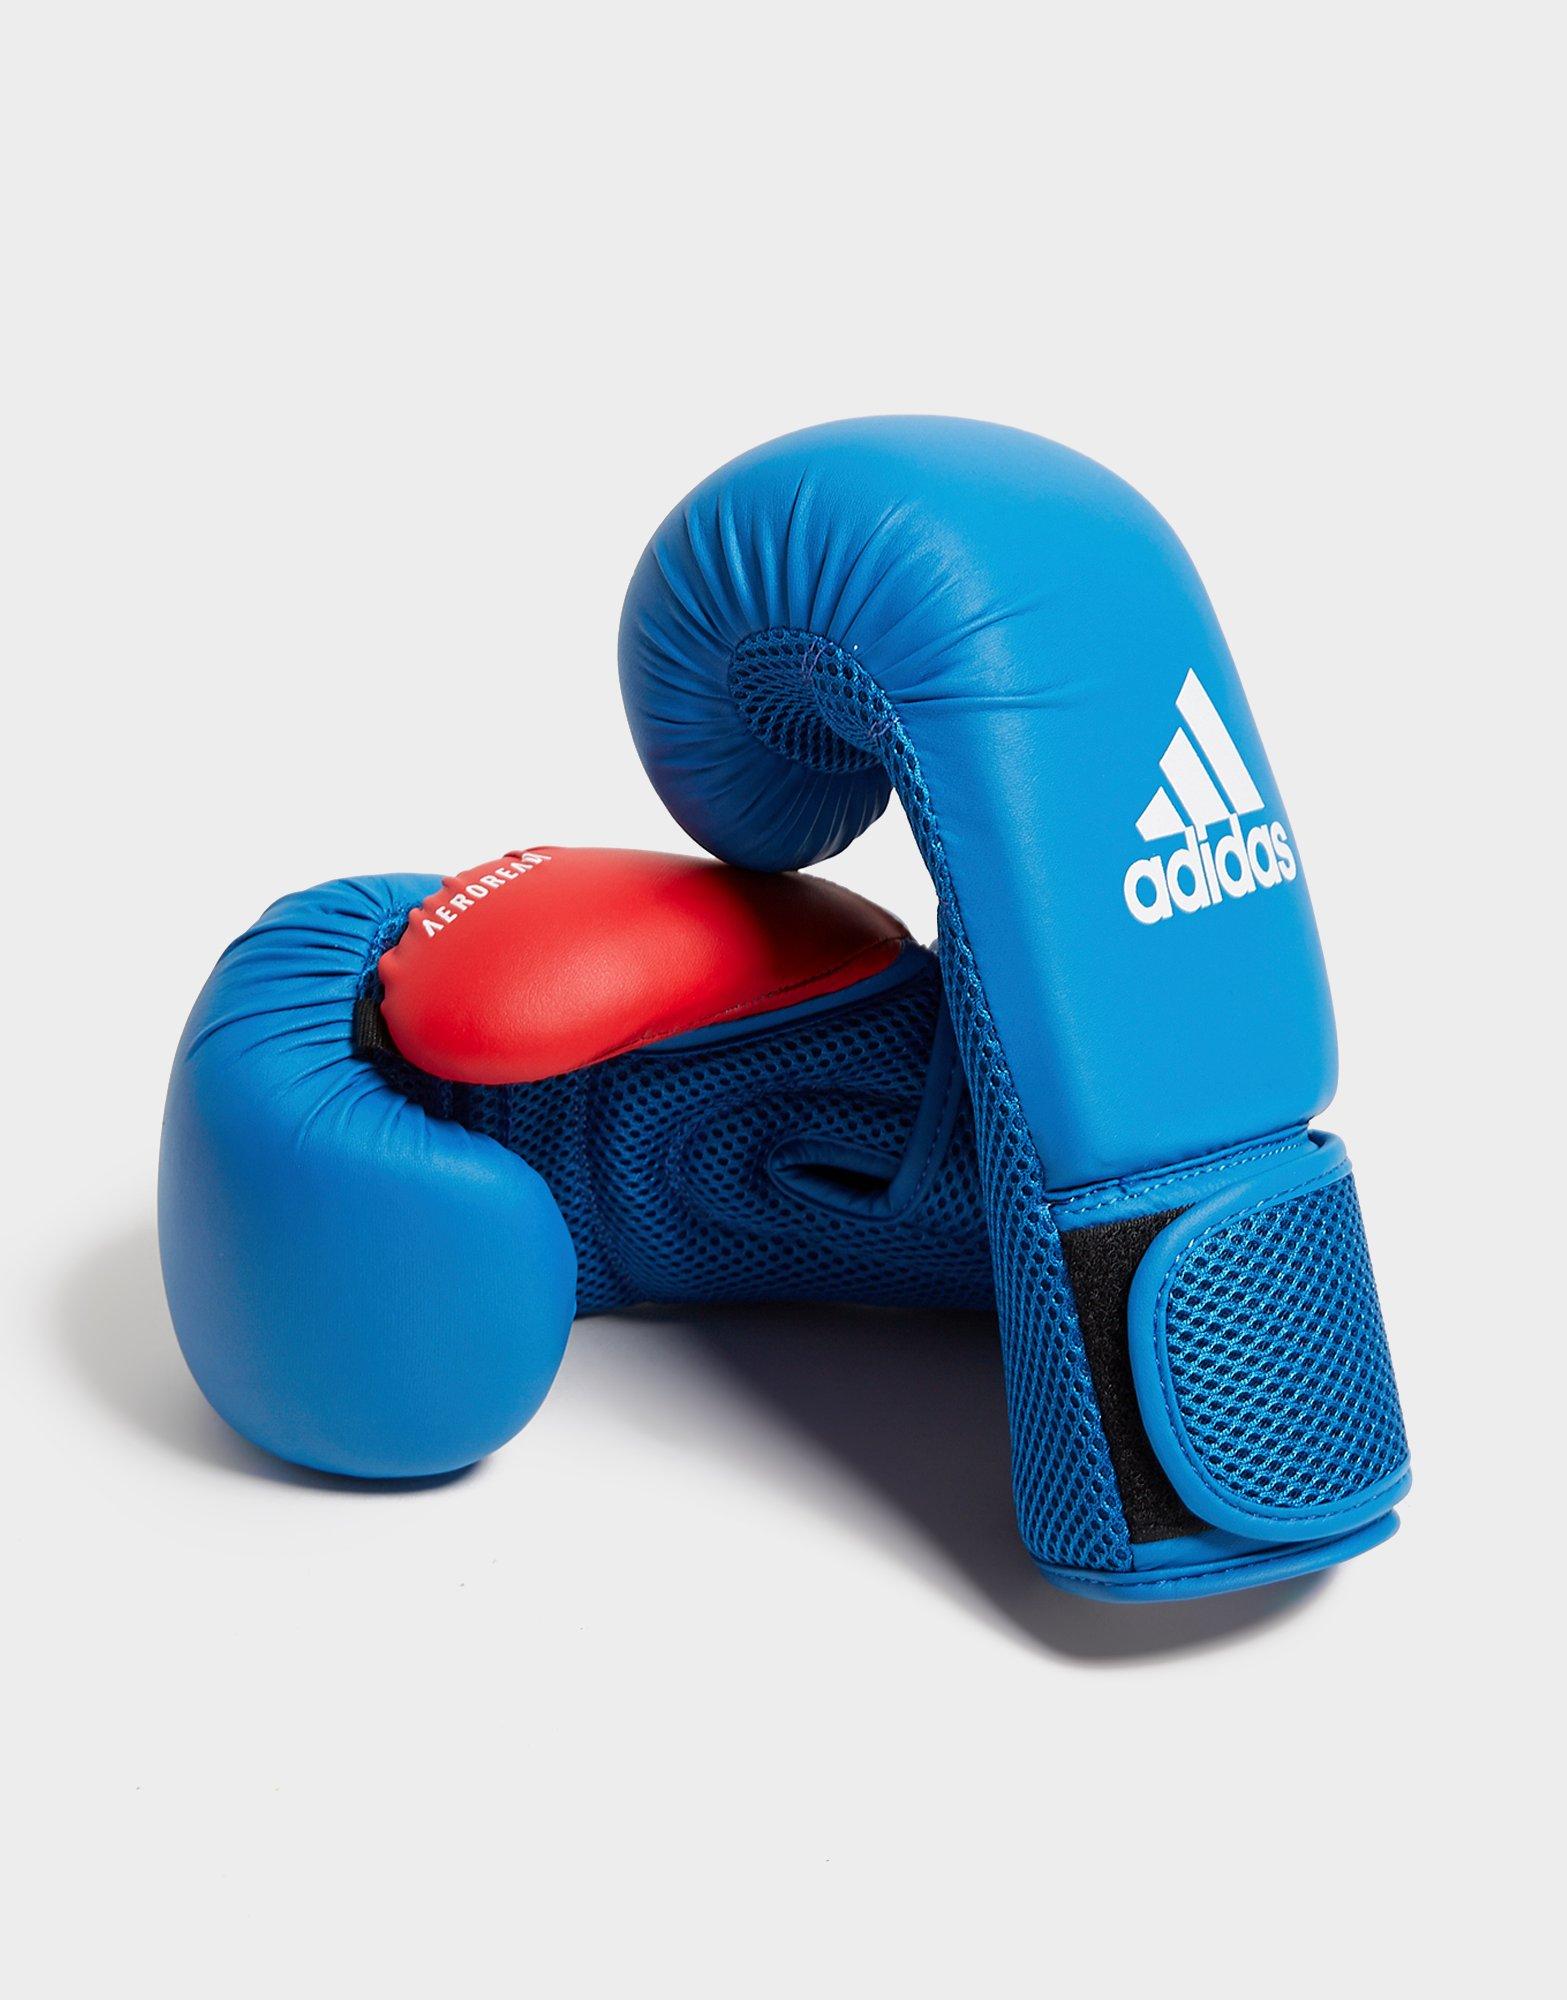 kids adidas boxing gloves